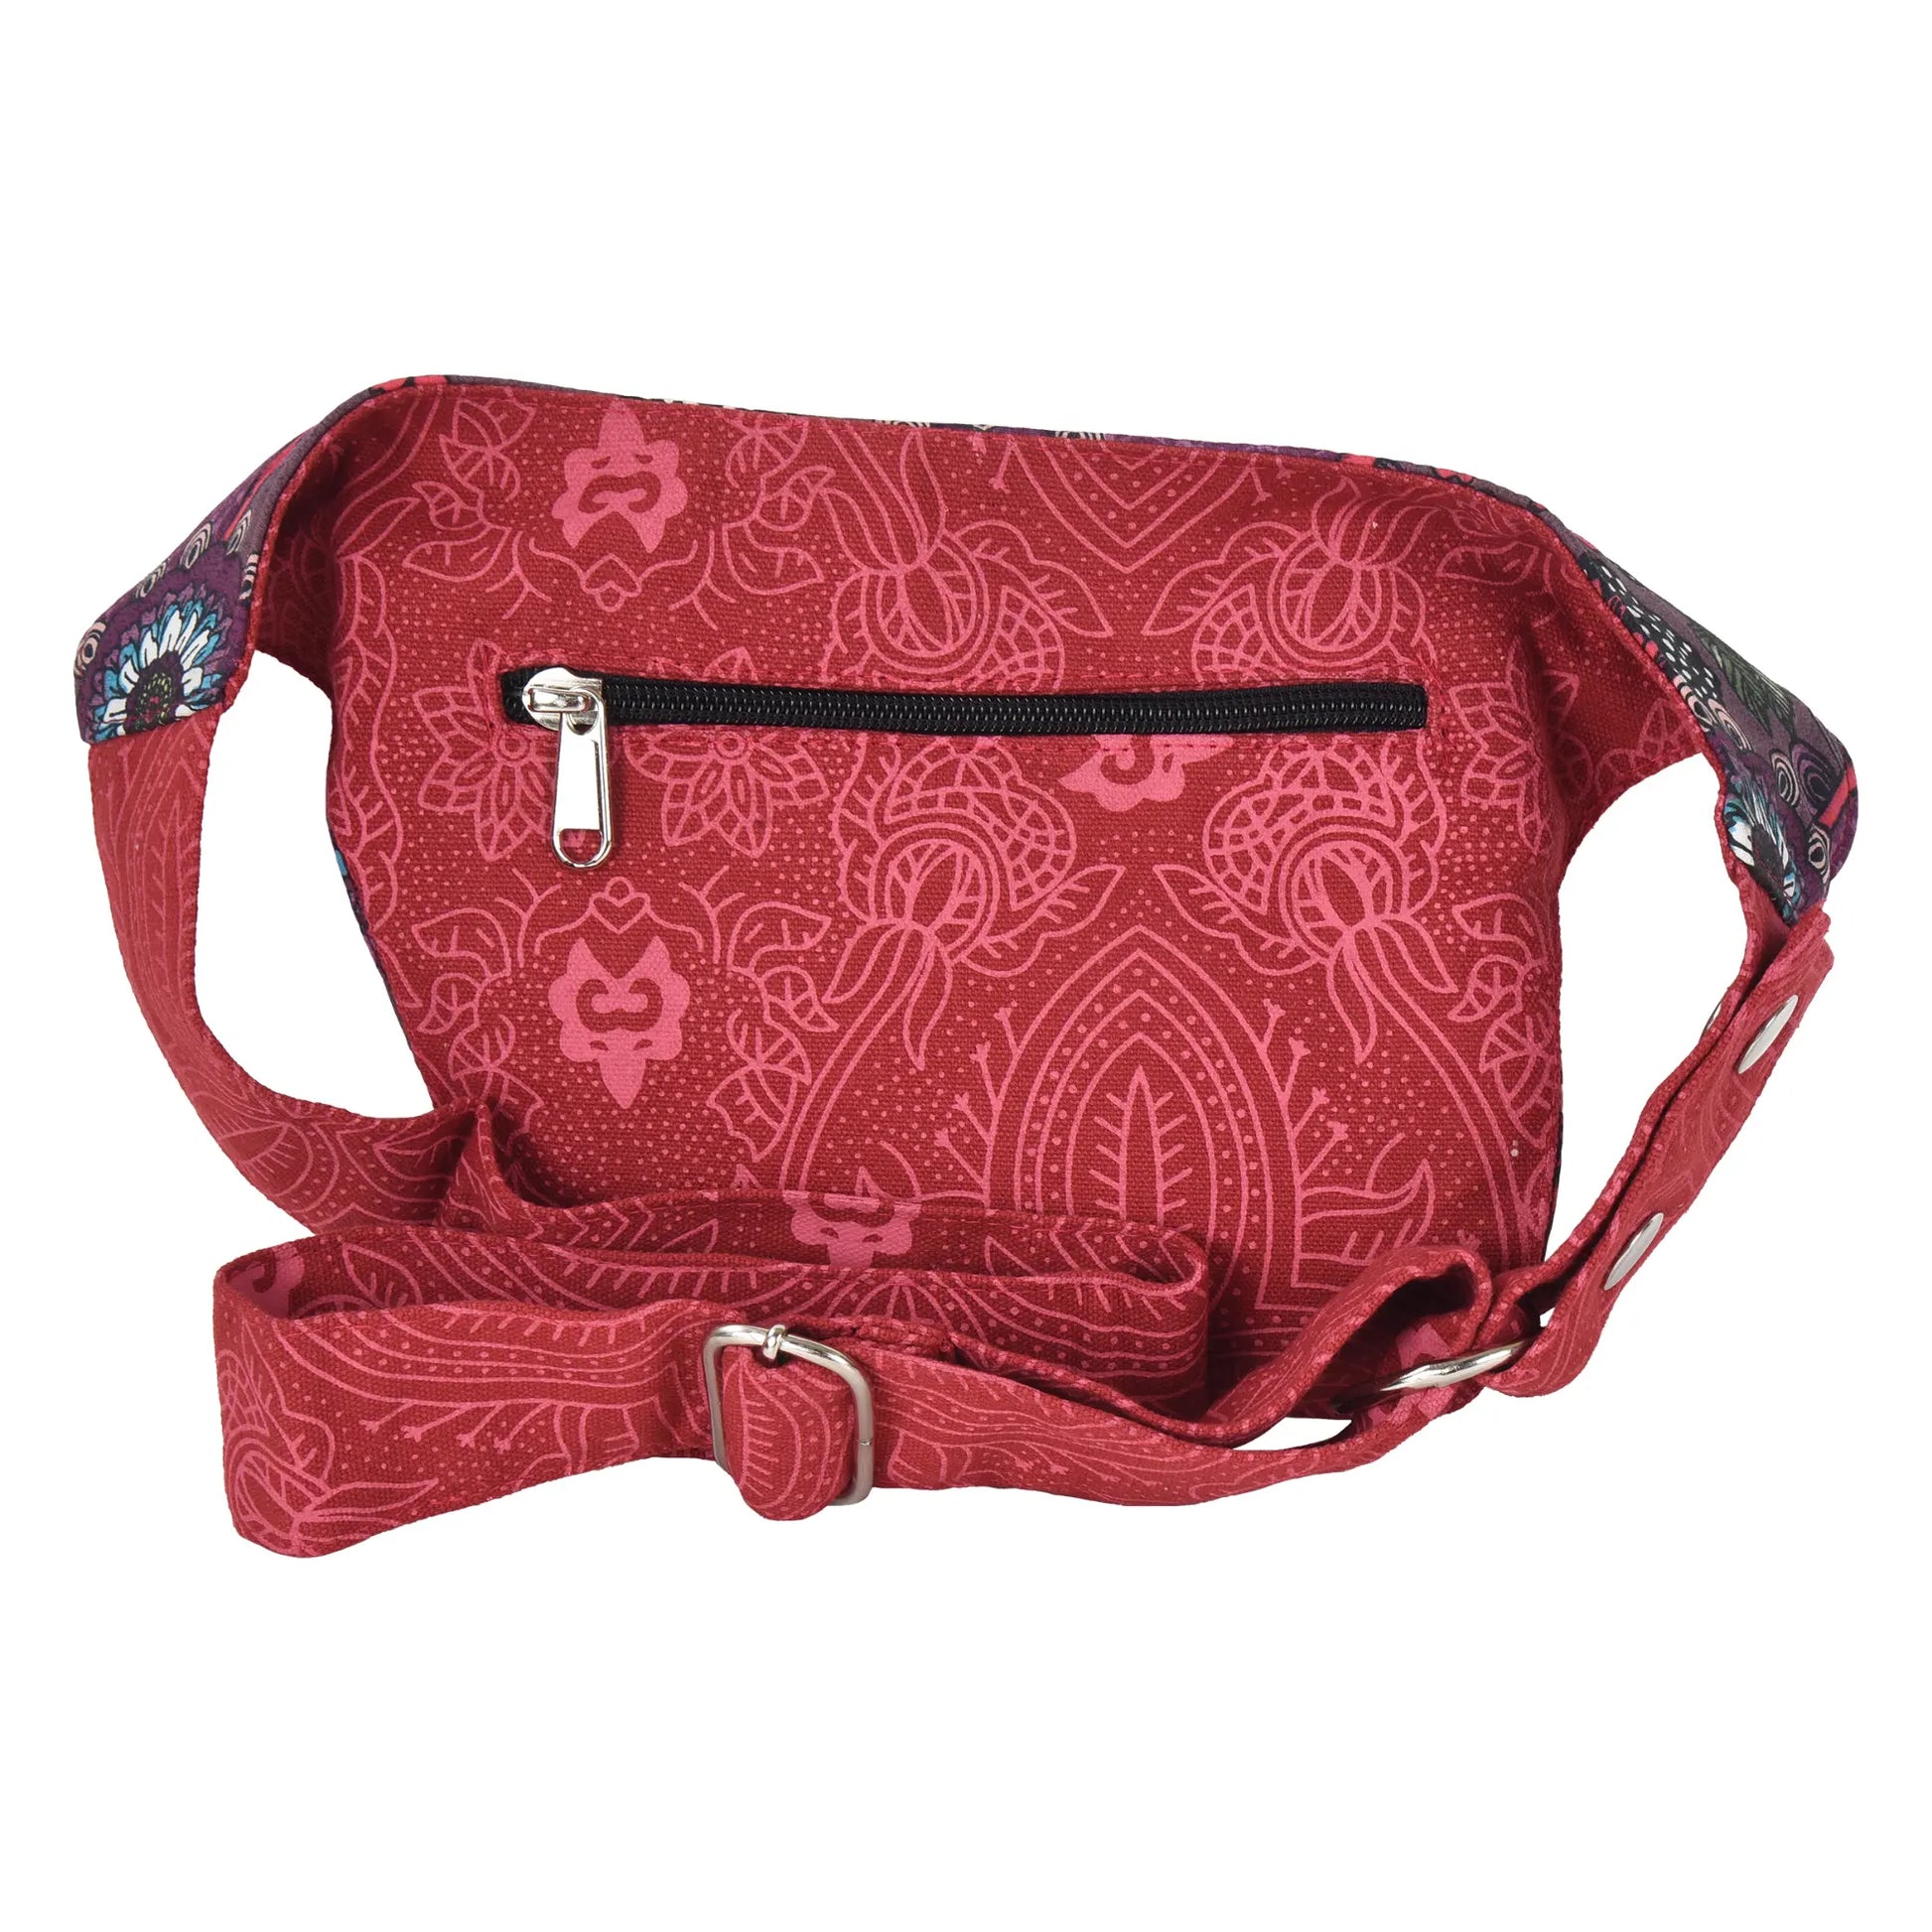 Bauchtasche Hippie Tasche in Rot mit Blumenmuster 5